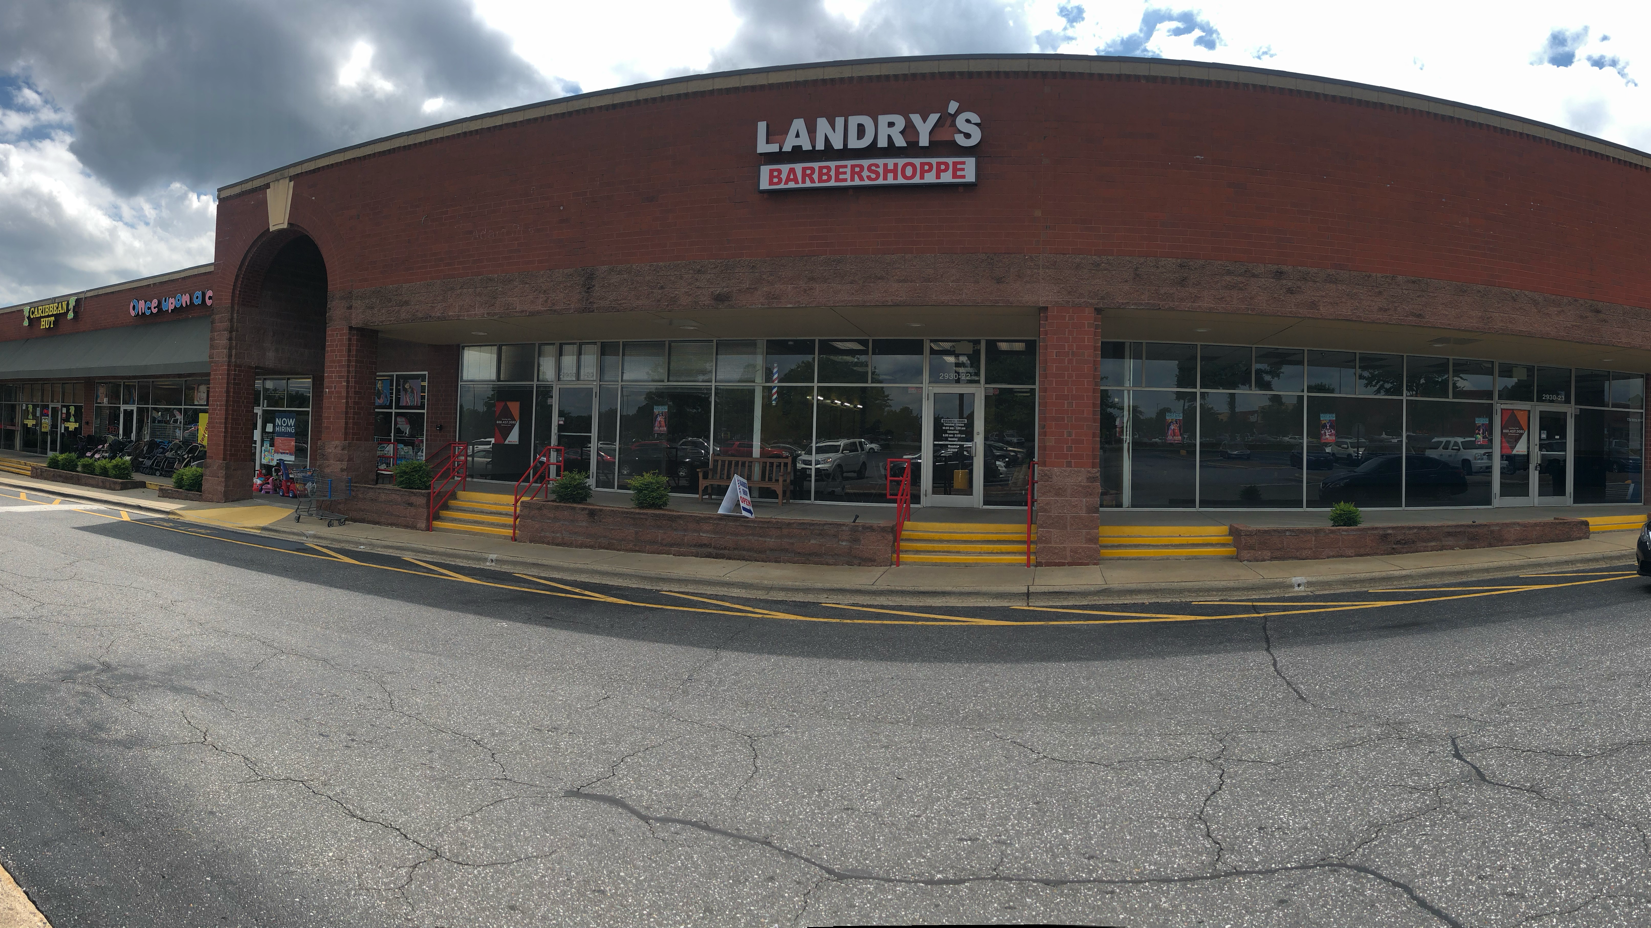 Landry’s Barber Shoppe